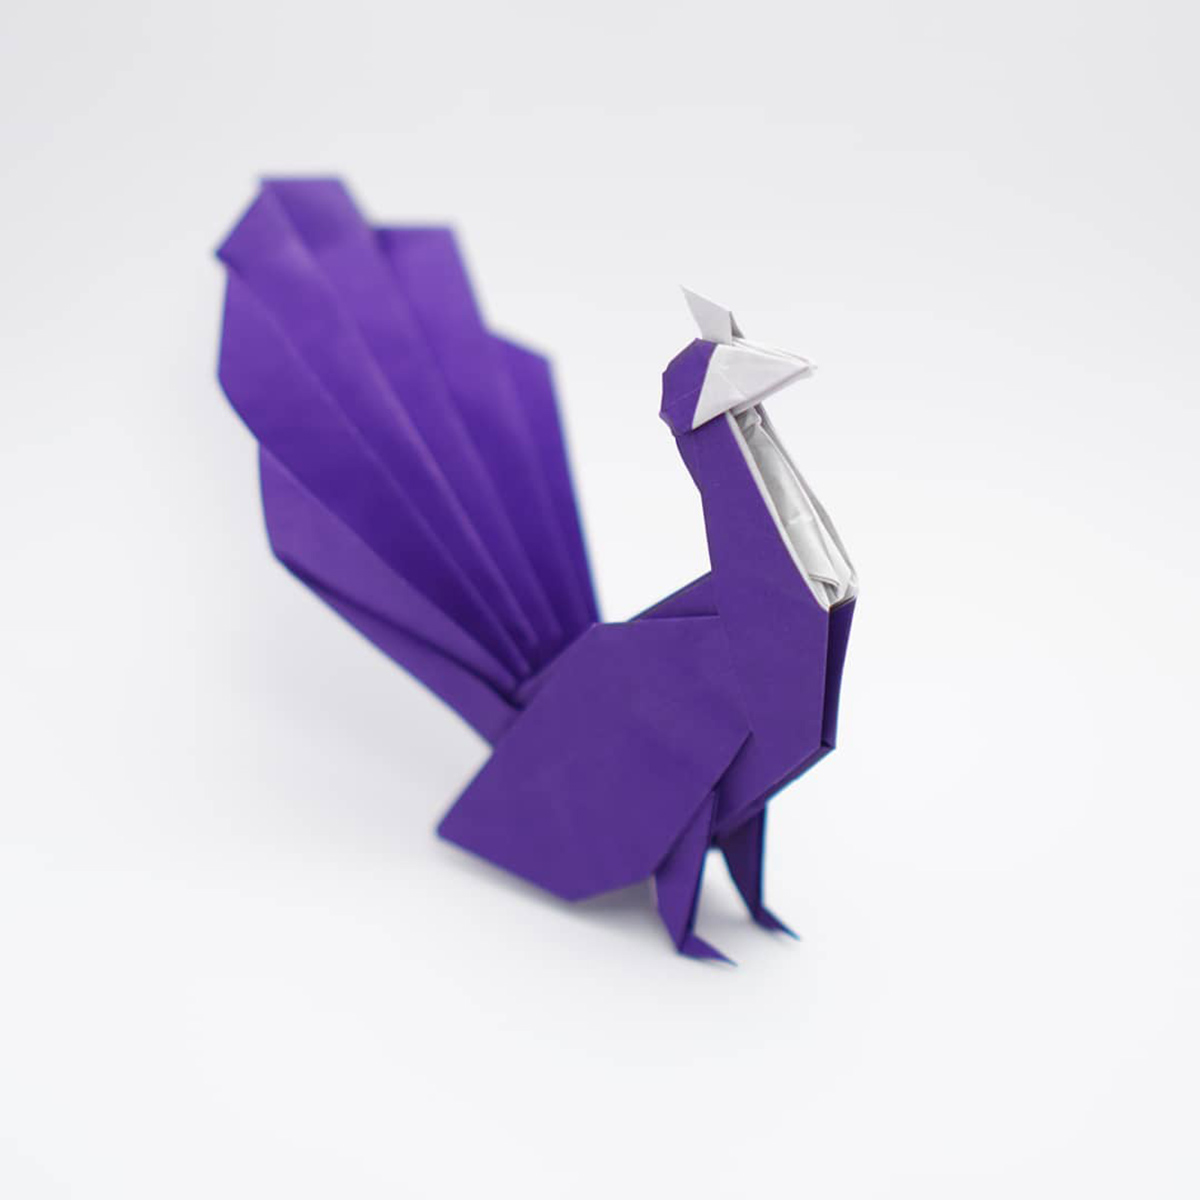 Jo Nakashima dévoile des tutoriels vidéos d'origamis créatifs complexes